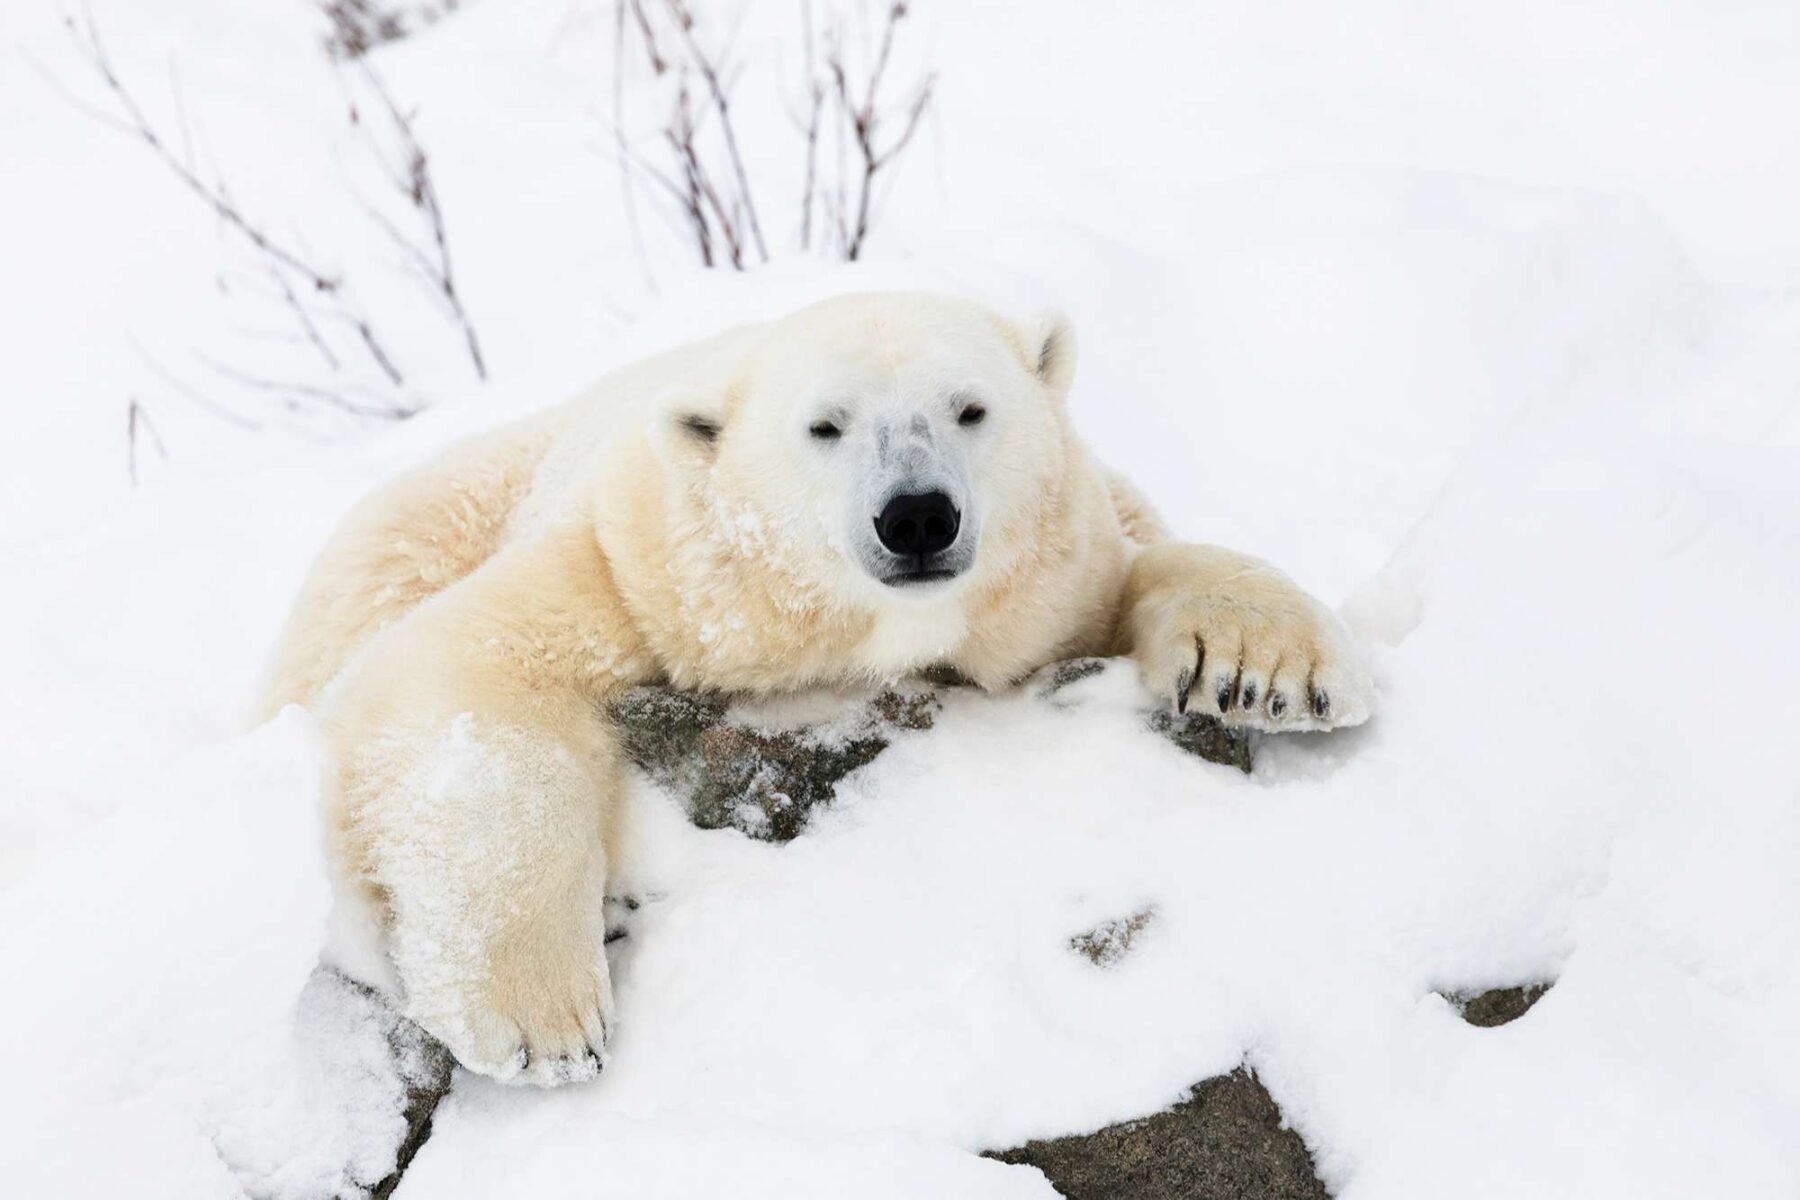 finnish lapland ranua wildlife park polar bear hello